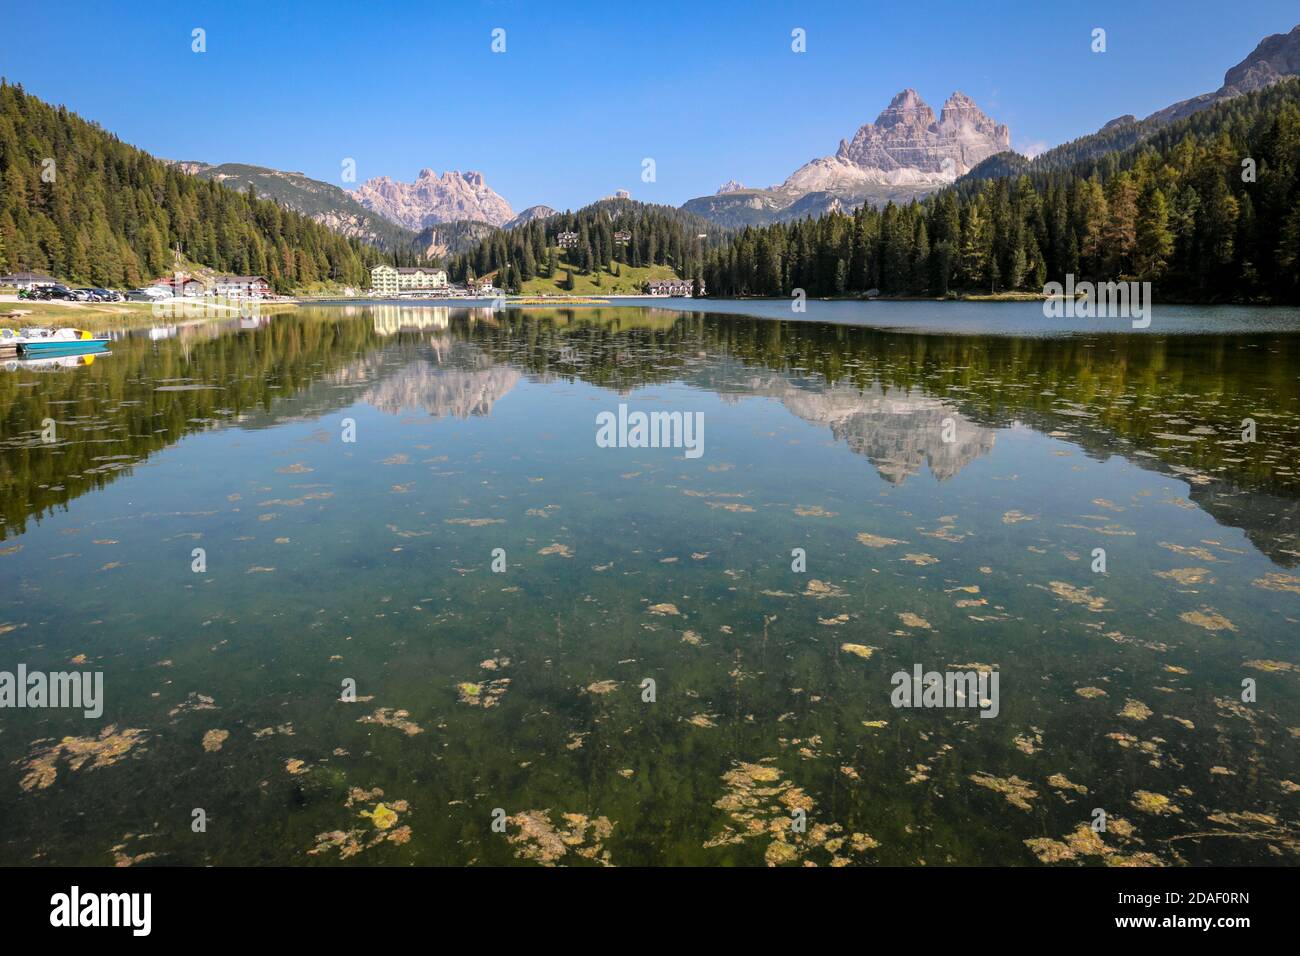 Lago di Misurina (Lago Misurina) con reflejos del lago espejo del panorama alpino de las montañas Dolomitas en Misurina, Véneto, norte de Italia. Foto de stock